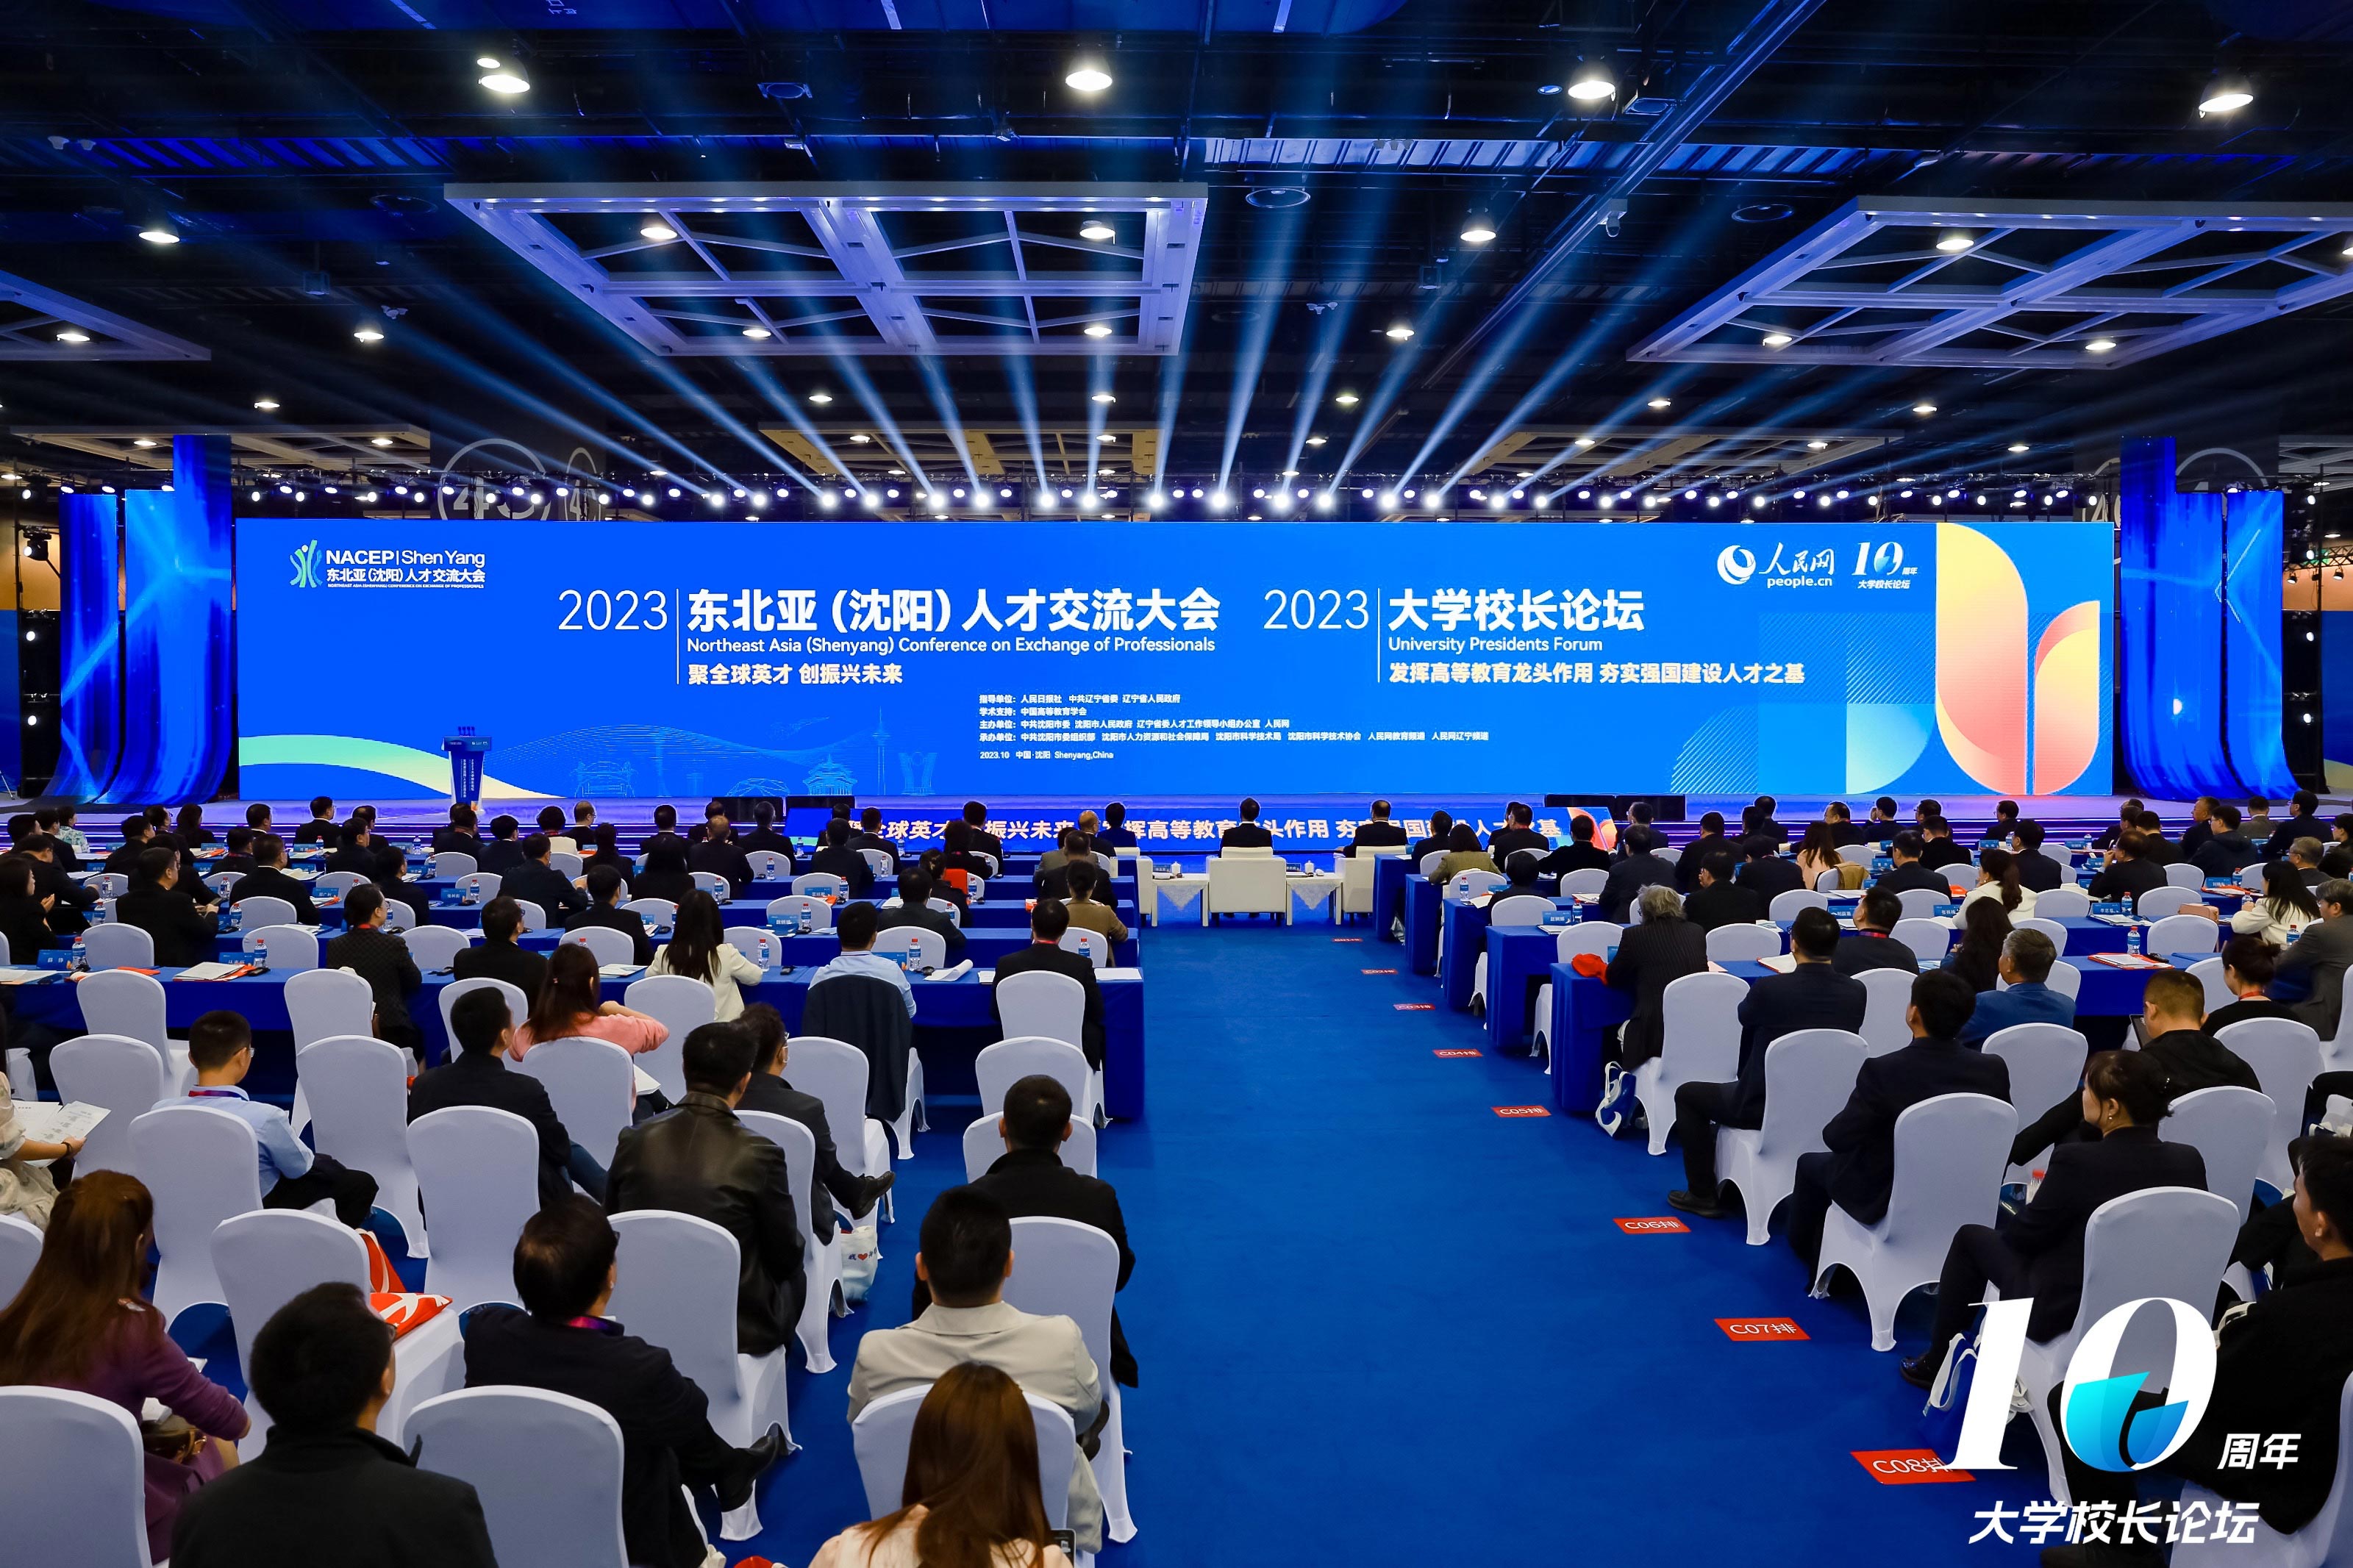 Forum Presiden Universiti 2023 dan Persidangan Komunikasi Bakat Asia Timur Laut diadakan dengan jaya. (foto/People’s Daily Online)